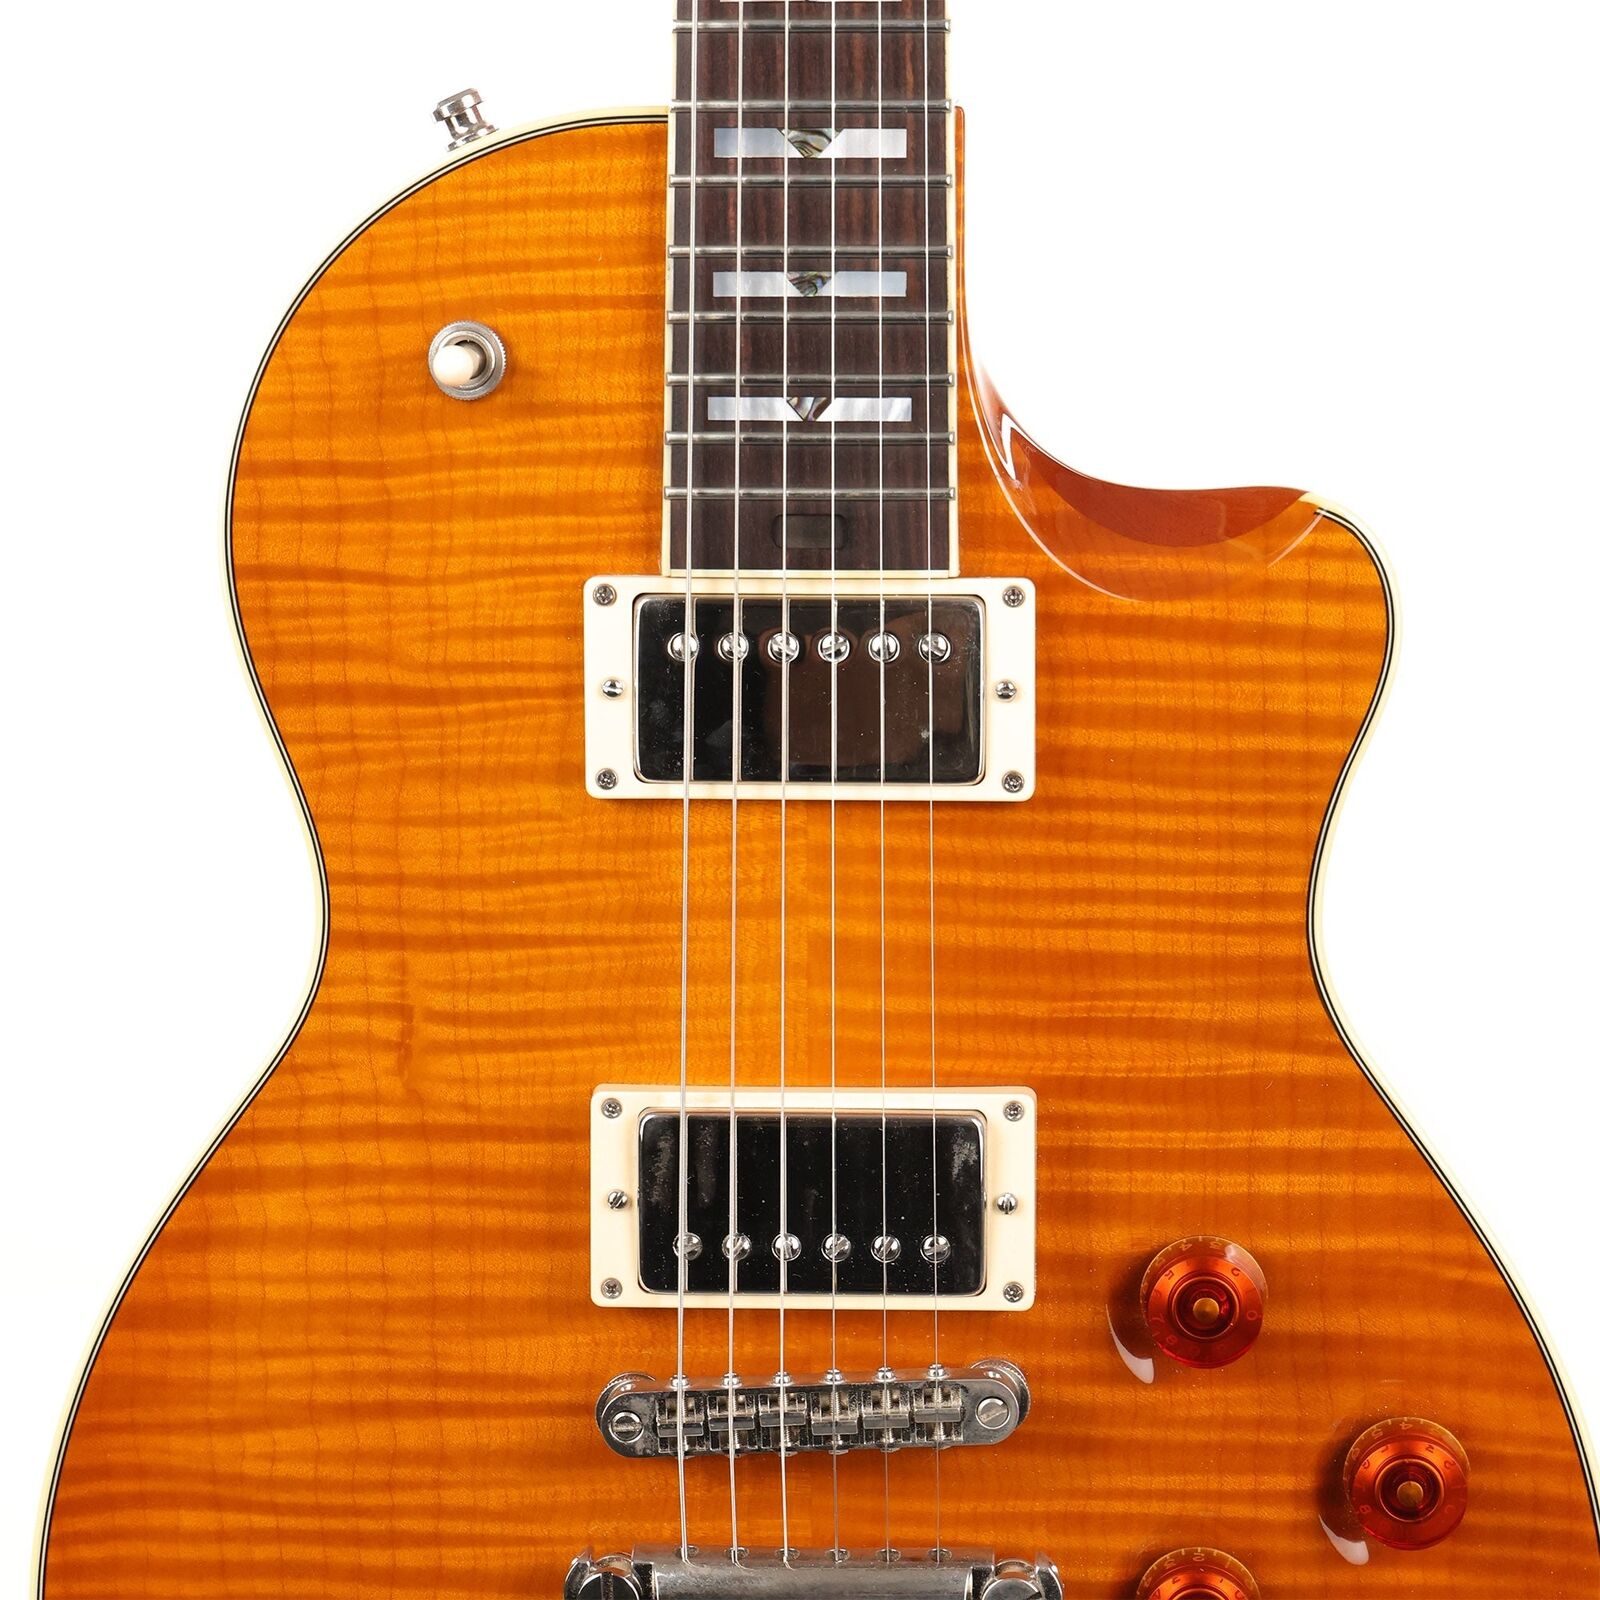 L a rriv ee rs-04 fiamma top sunburst 2008 chitarra elettrica come lo stesso delle immagini